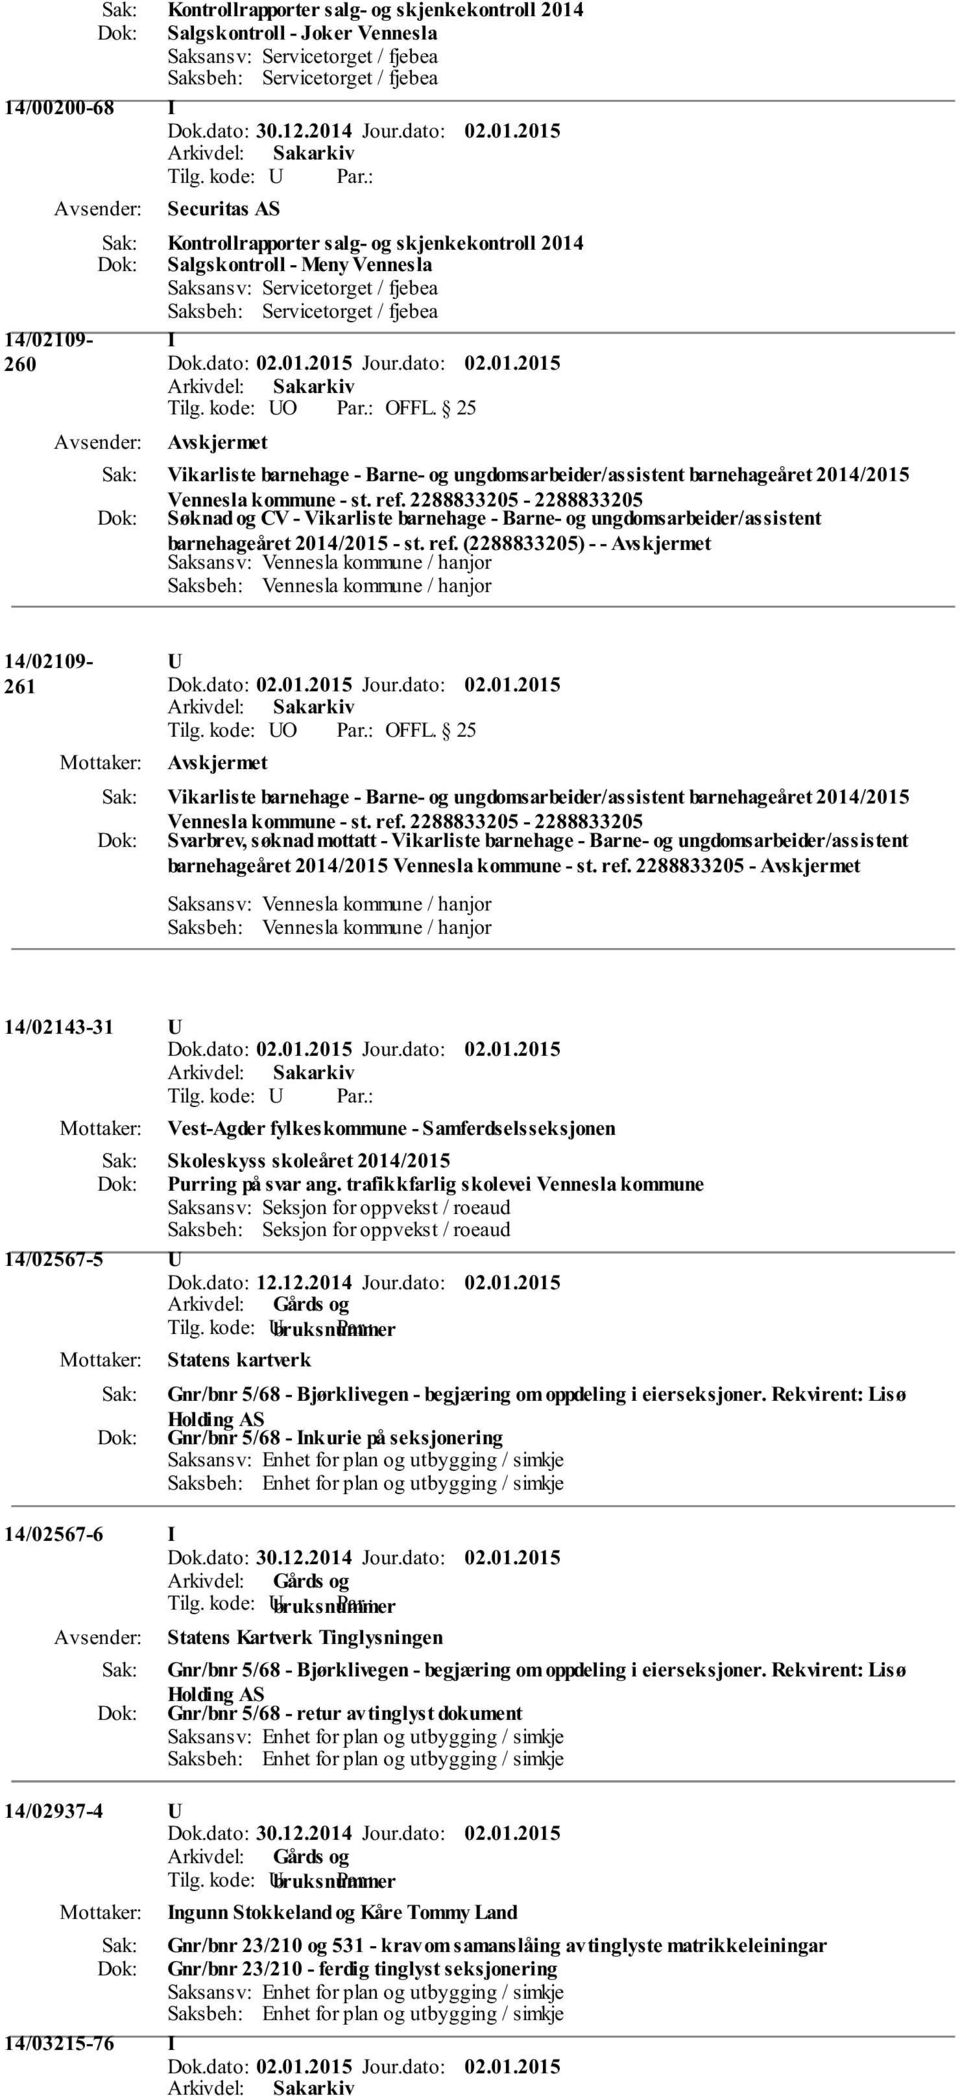 (2288833205) - - 14/02109-261 U Vikarliste barnehage - Barne- og ungdomsarbeider/assistent barnehageåret 2014/2015 Vennesla kommune - st. ref.